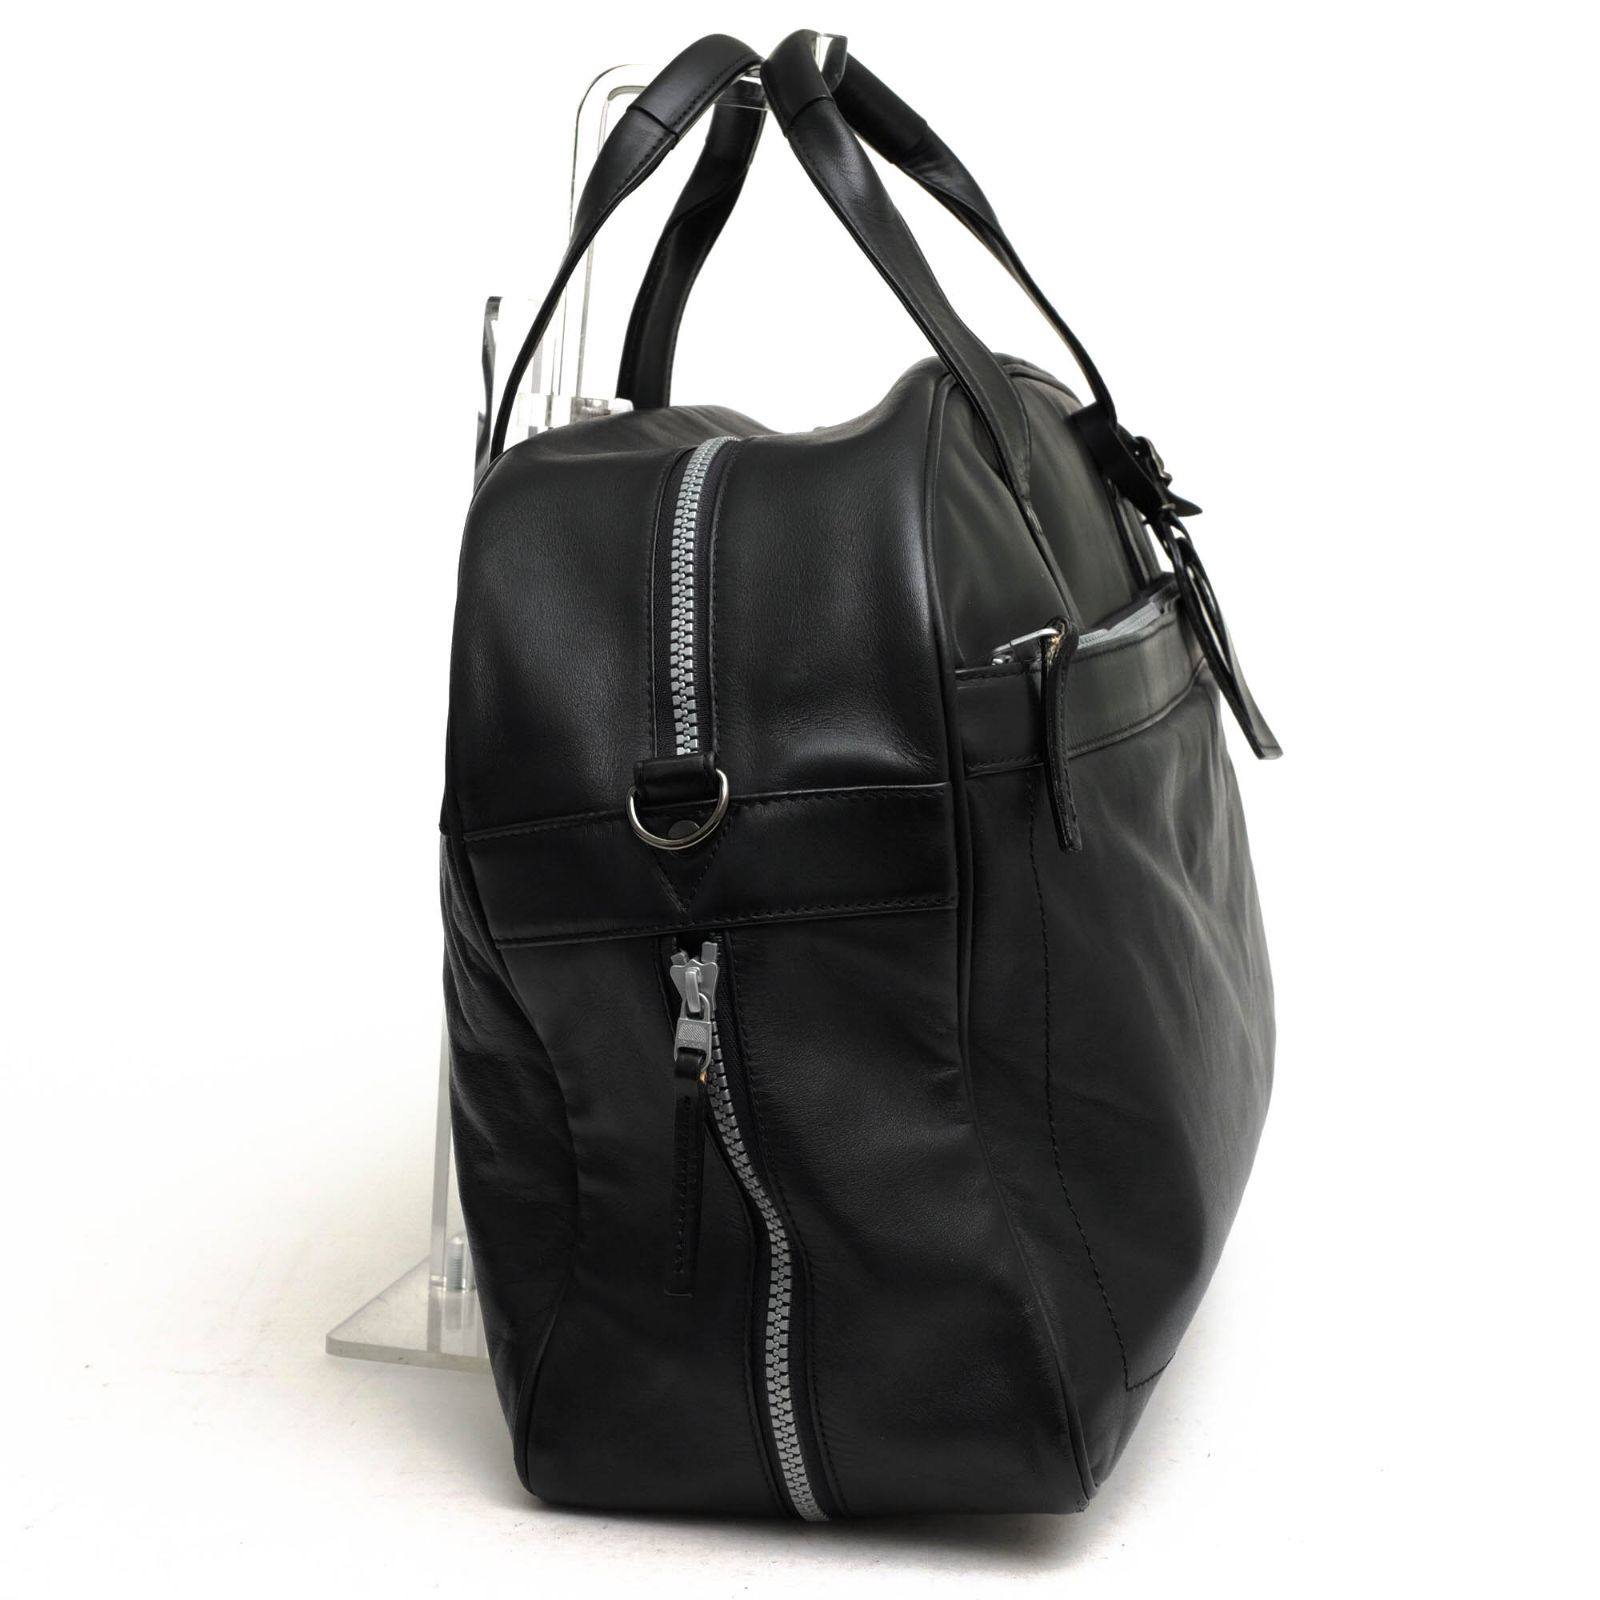 鴻池製作所／KONOIKE バッグ ボストンバッグ 鞄 旅行鞄 メンズ 男性 男性用レザー 革 本革 ブラック 黒